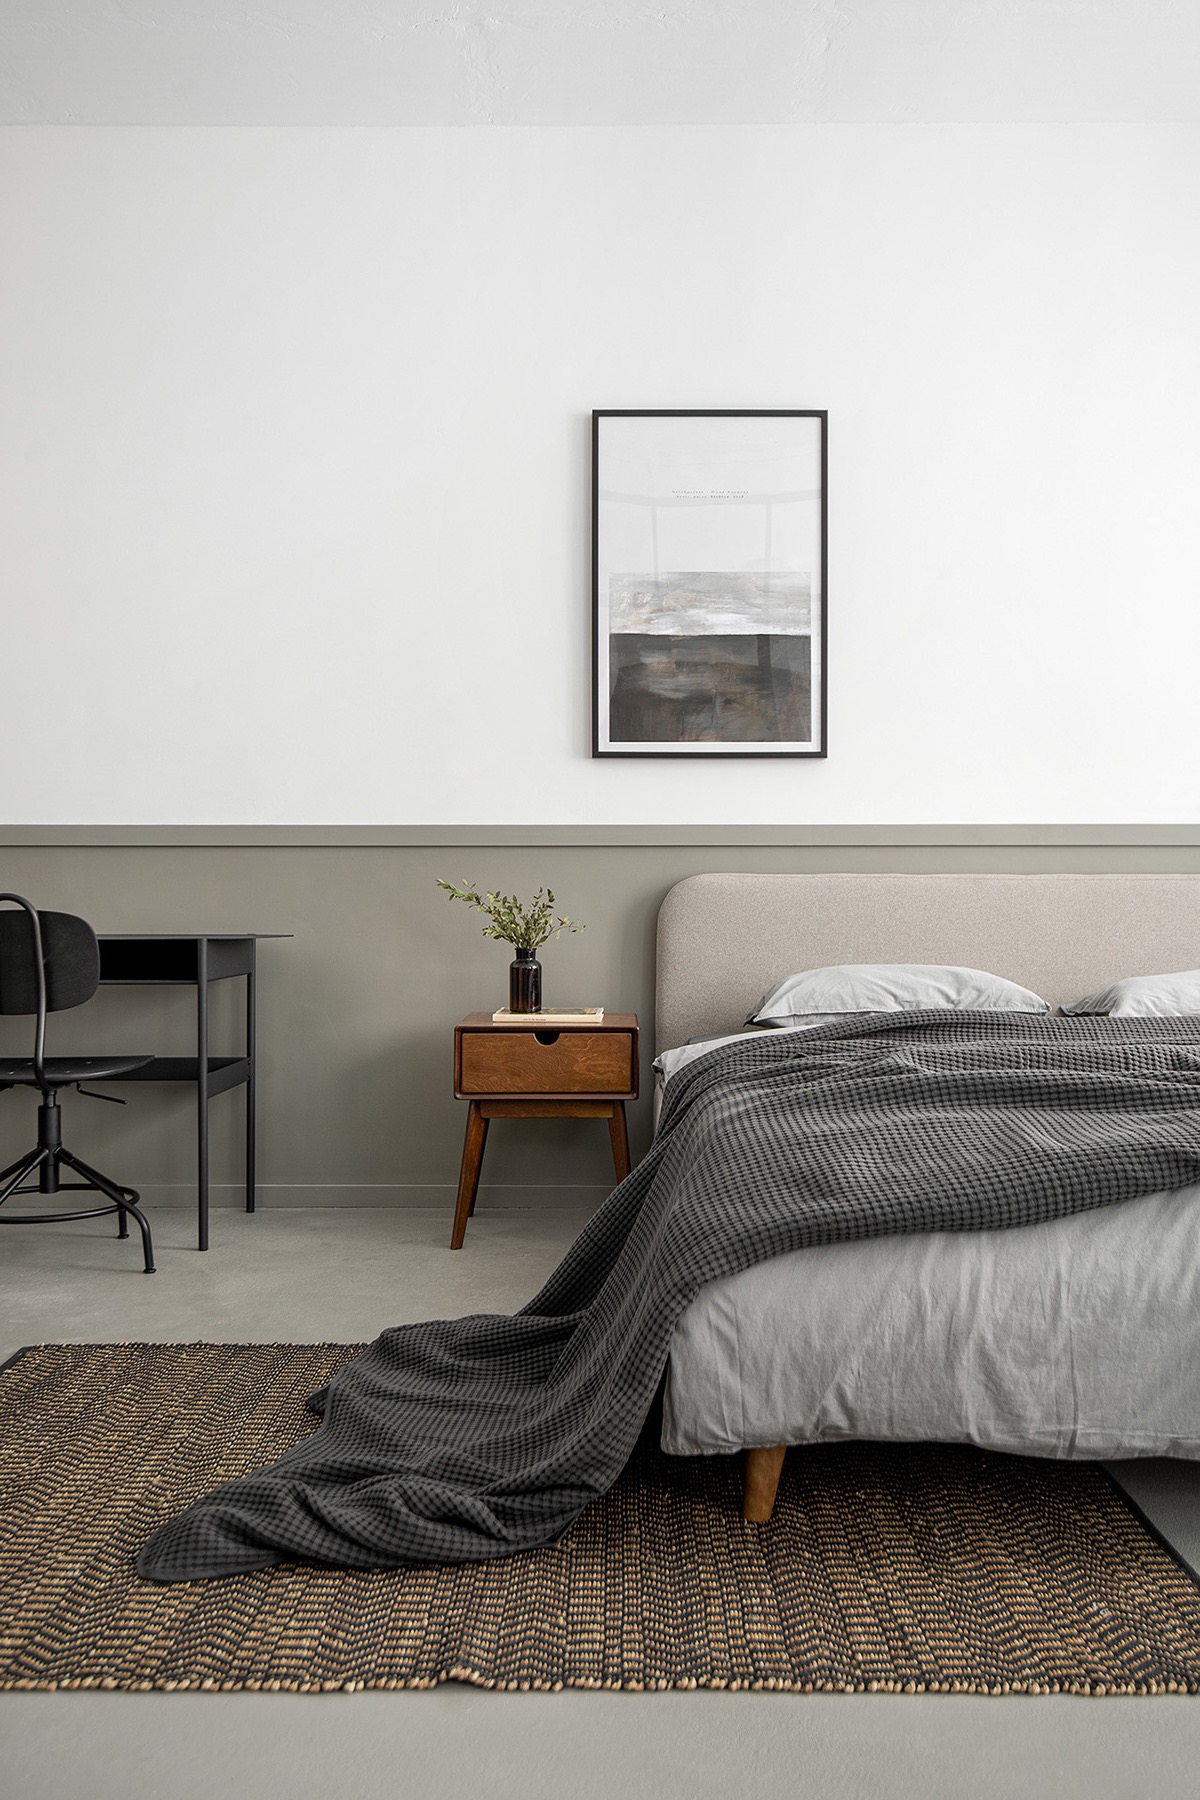 Bên trong phòng ngủ, chiếc giường lấy cảm hứng từ phong cách hiện đại giữa thế kỷ với chăn ga màu xám trung tính. Thảm dệt mang đến cảm giác ấm áp.